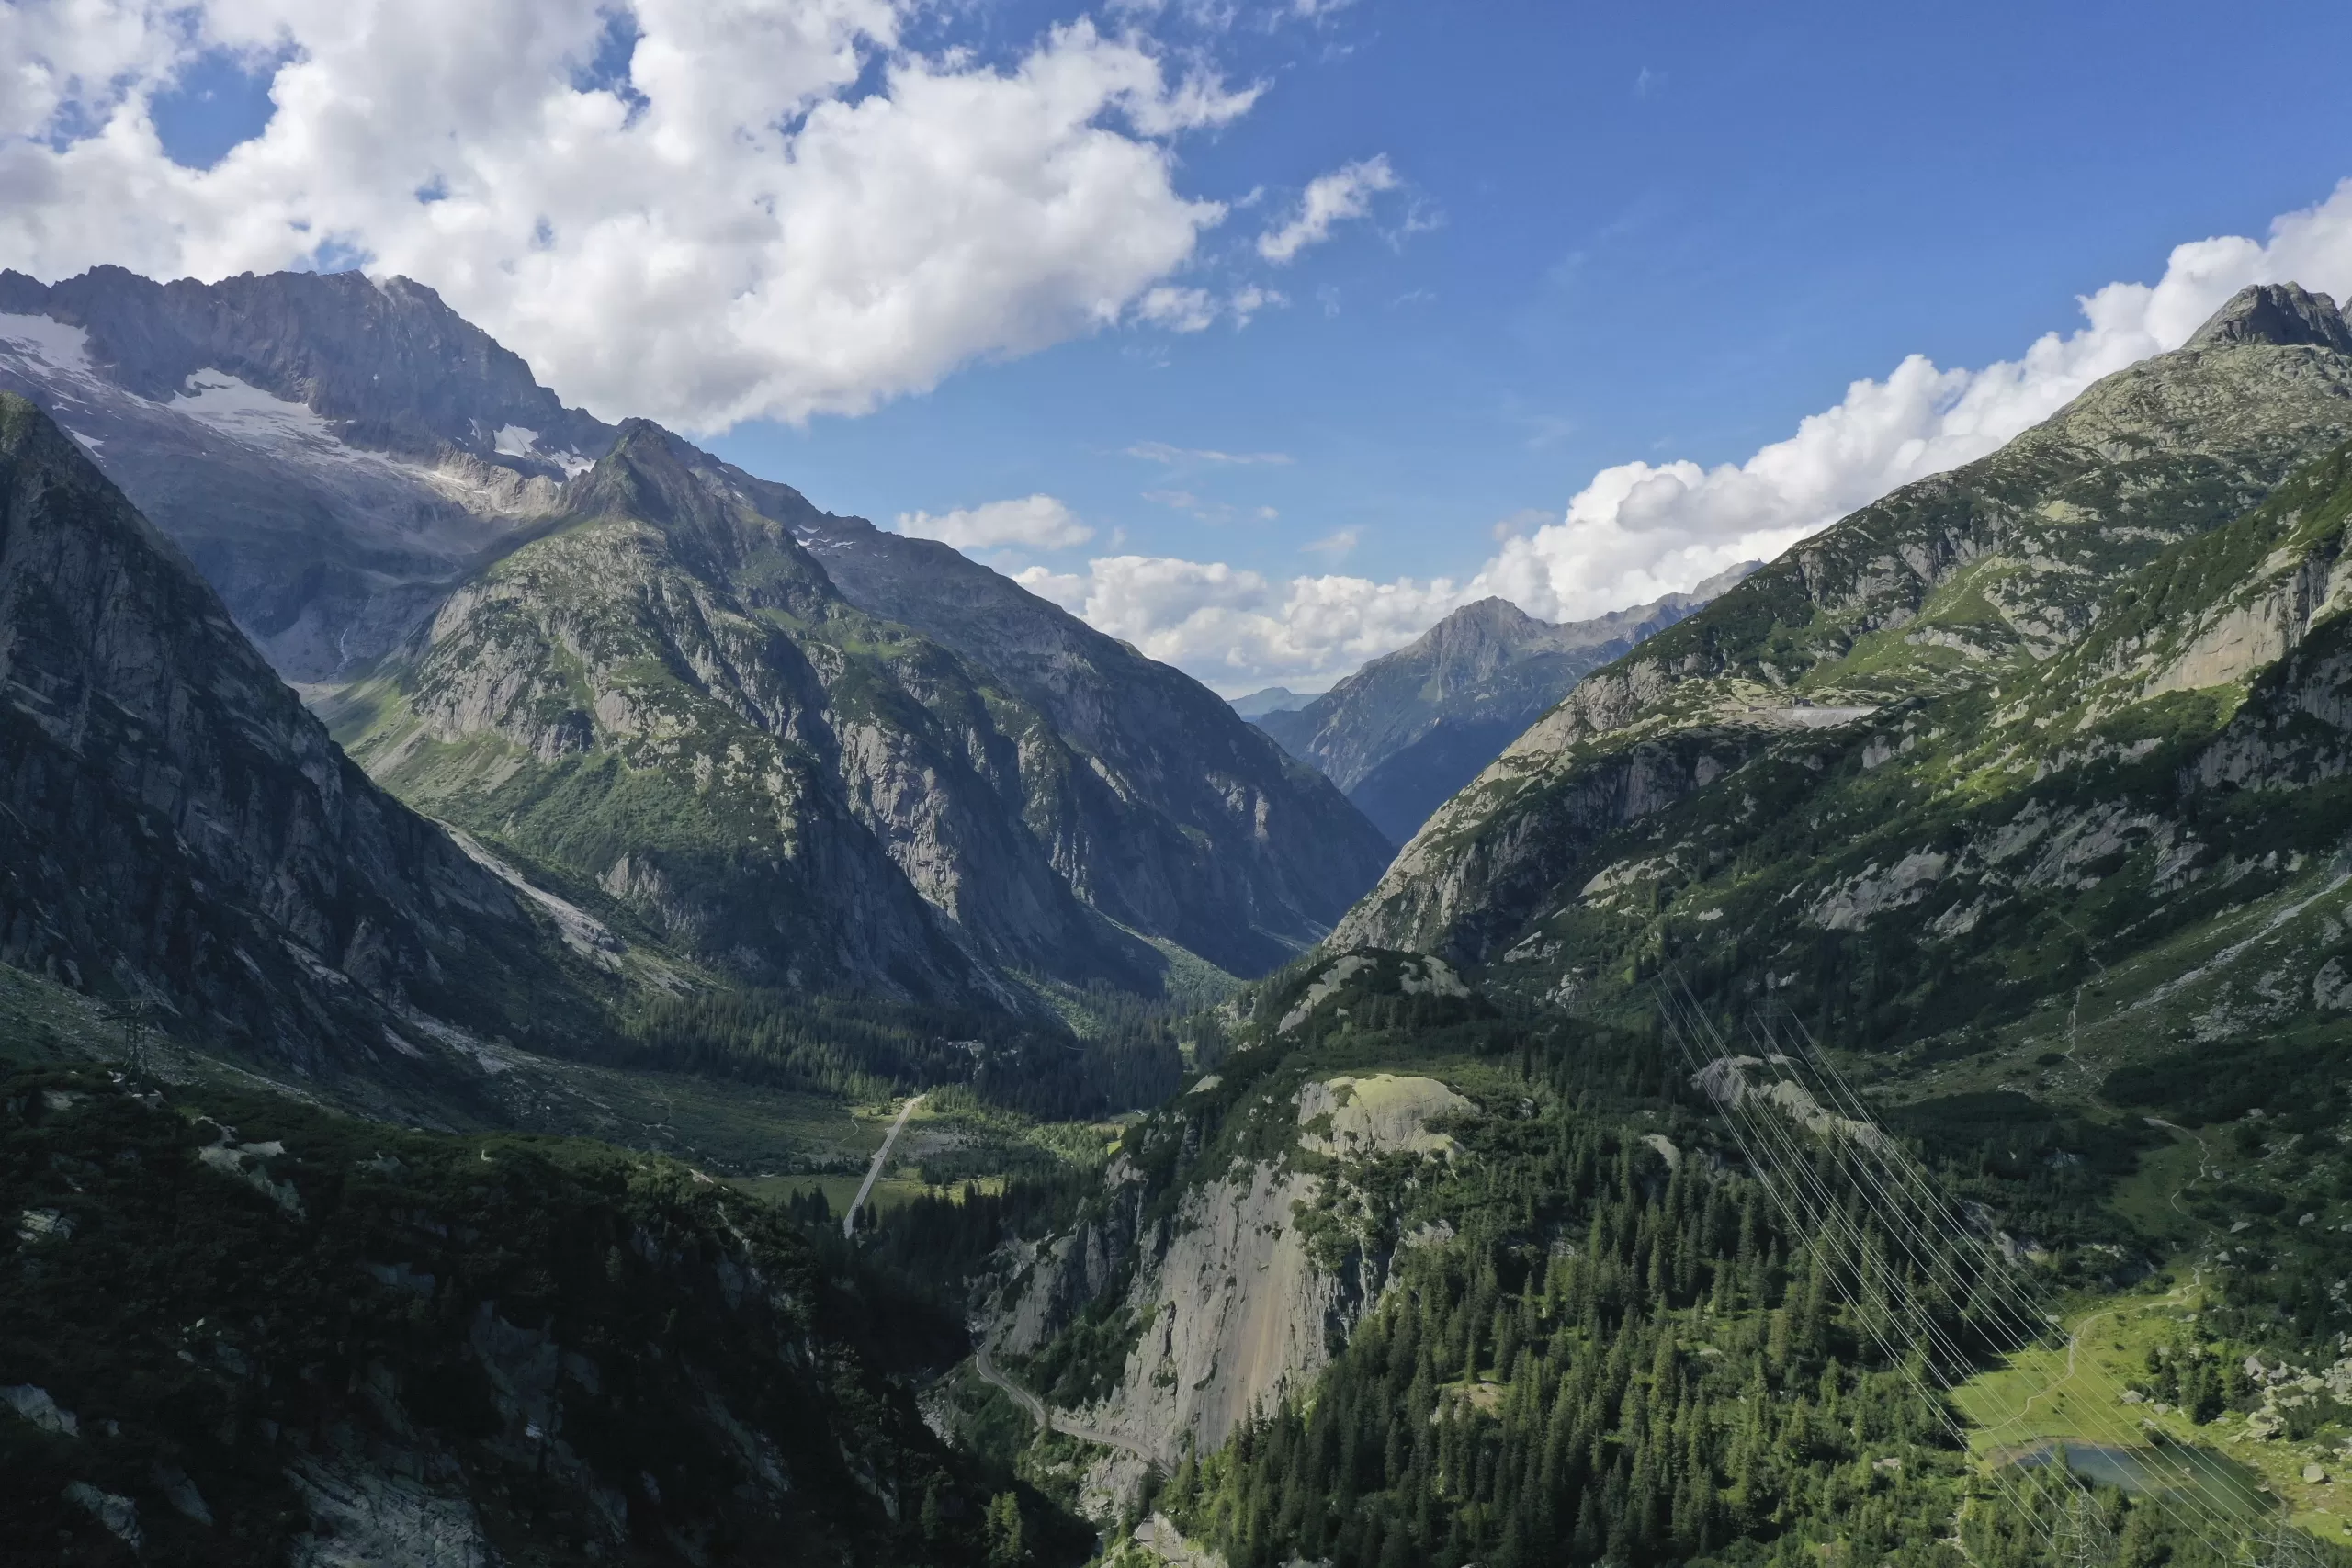 Paysage granitique en Suisse centrale. Le dôme au milieu de la photo a été a arrondi par l’érosion glaciaire, alors que les sommets à l’arrière-plan ont conservé leurs arêtes. Photo : Nagra